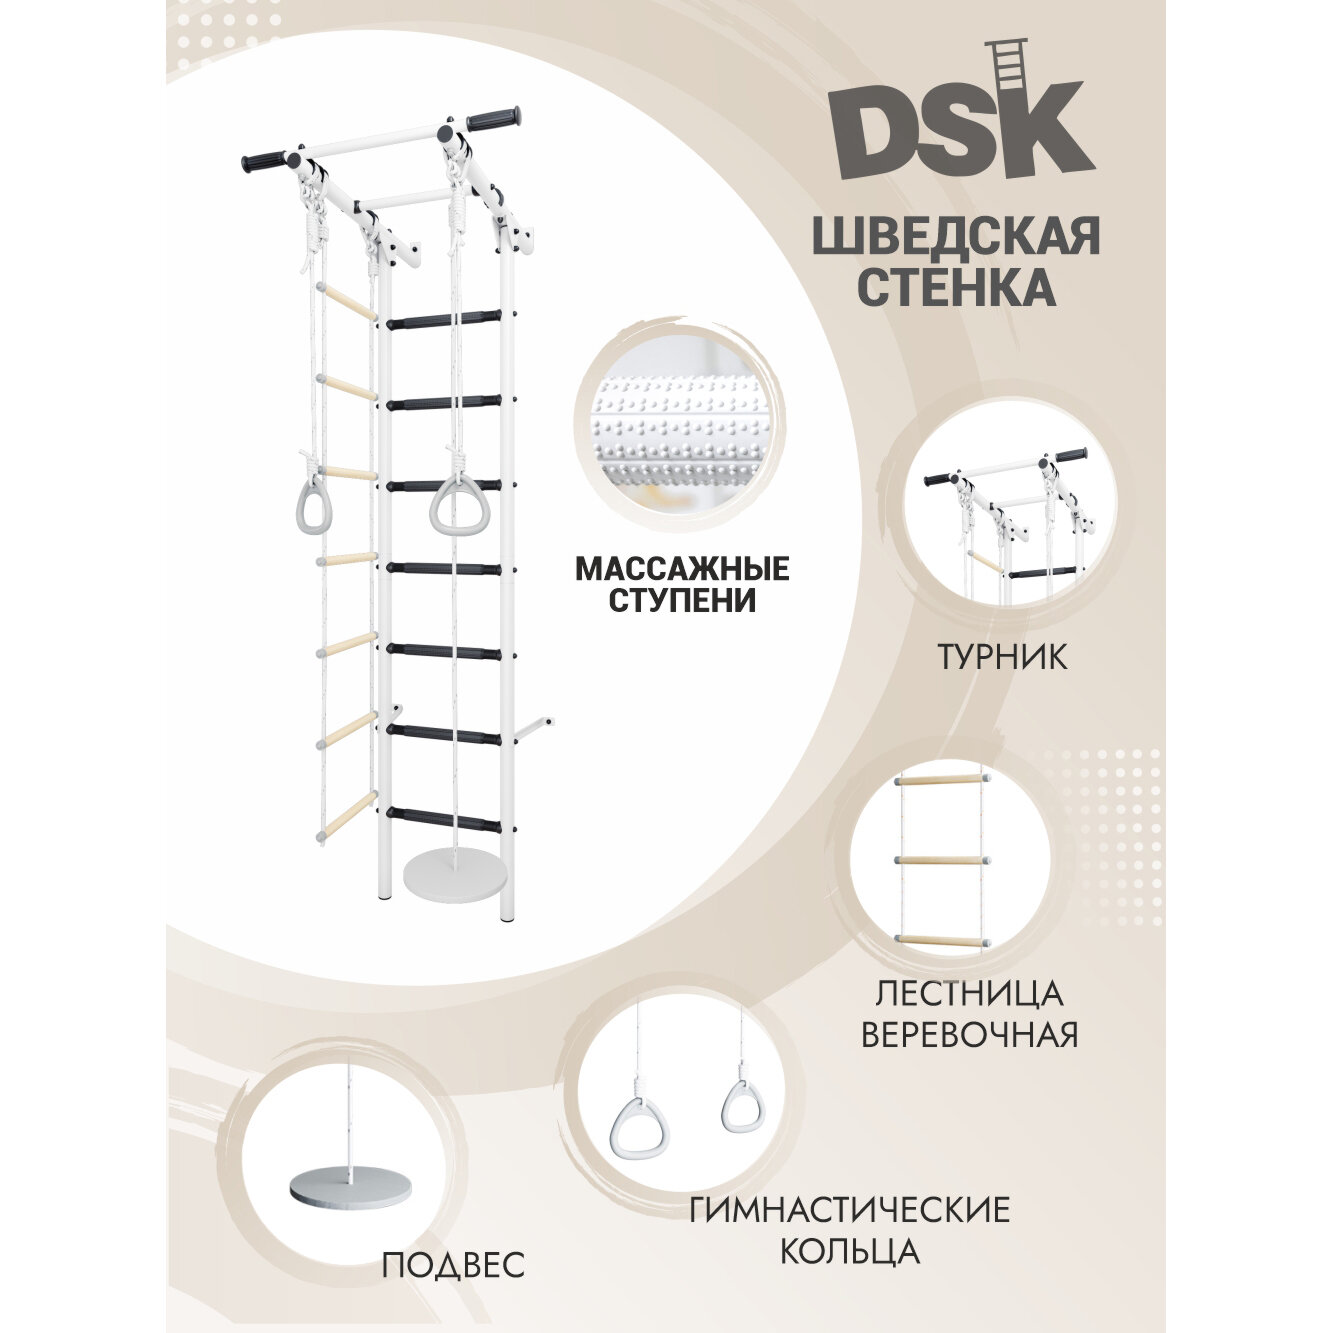 Шведская стенка DSK1.1 Romana, черные массажные ступени